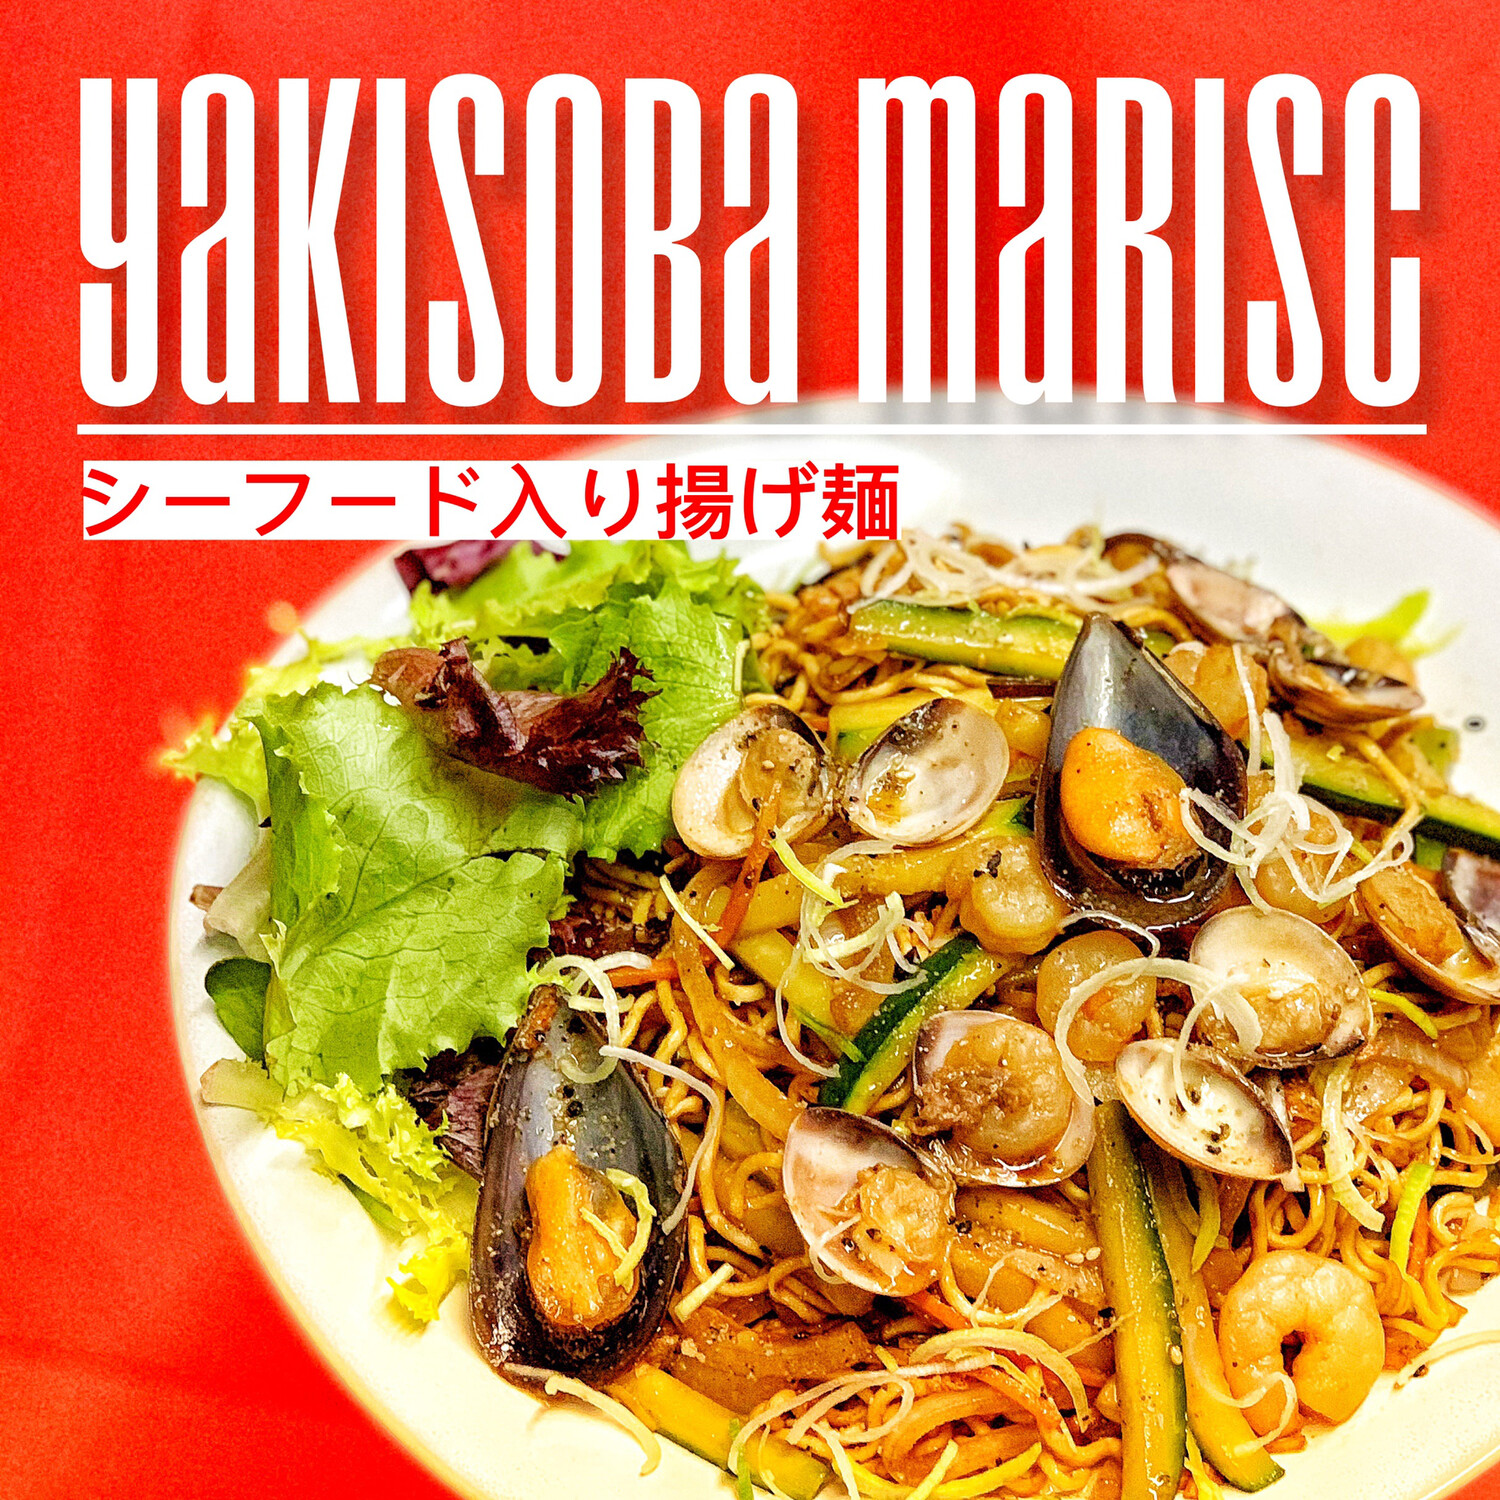 Yakisoba MARISC